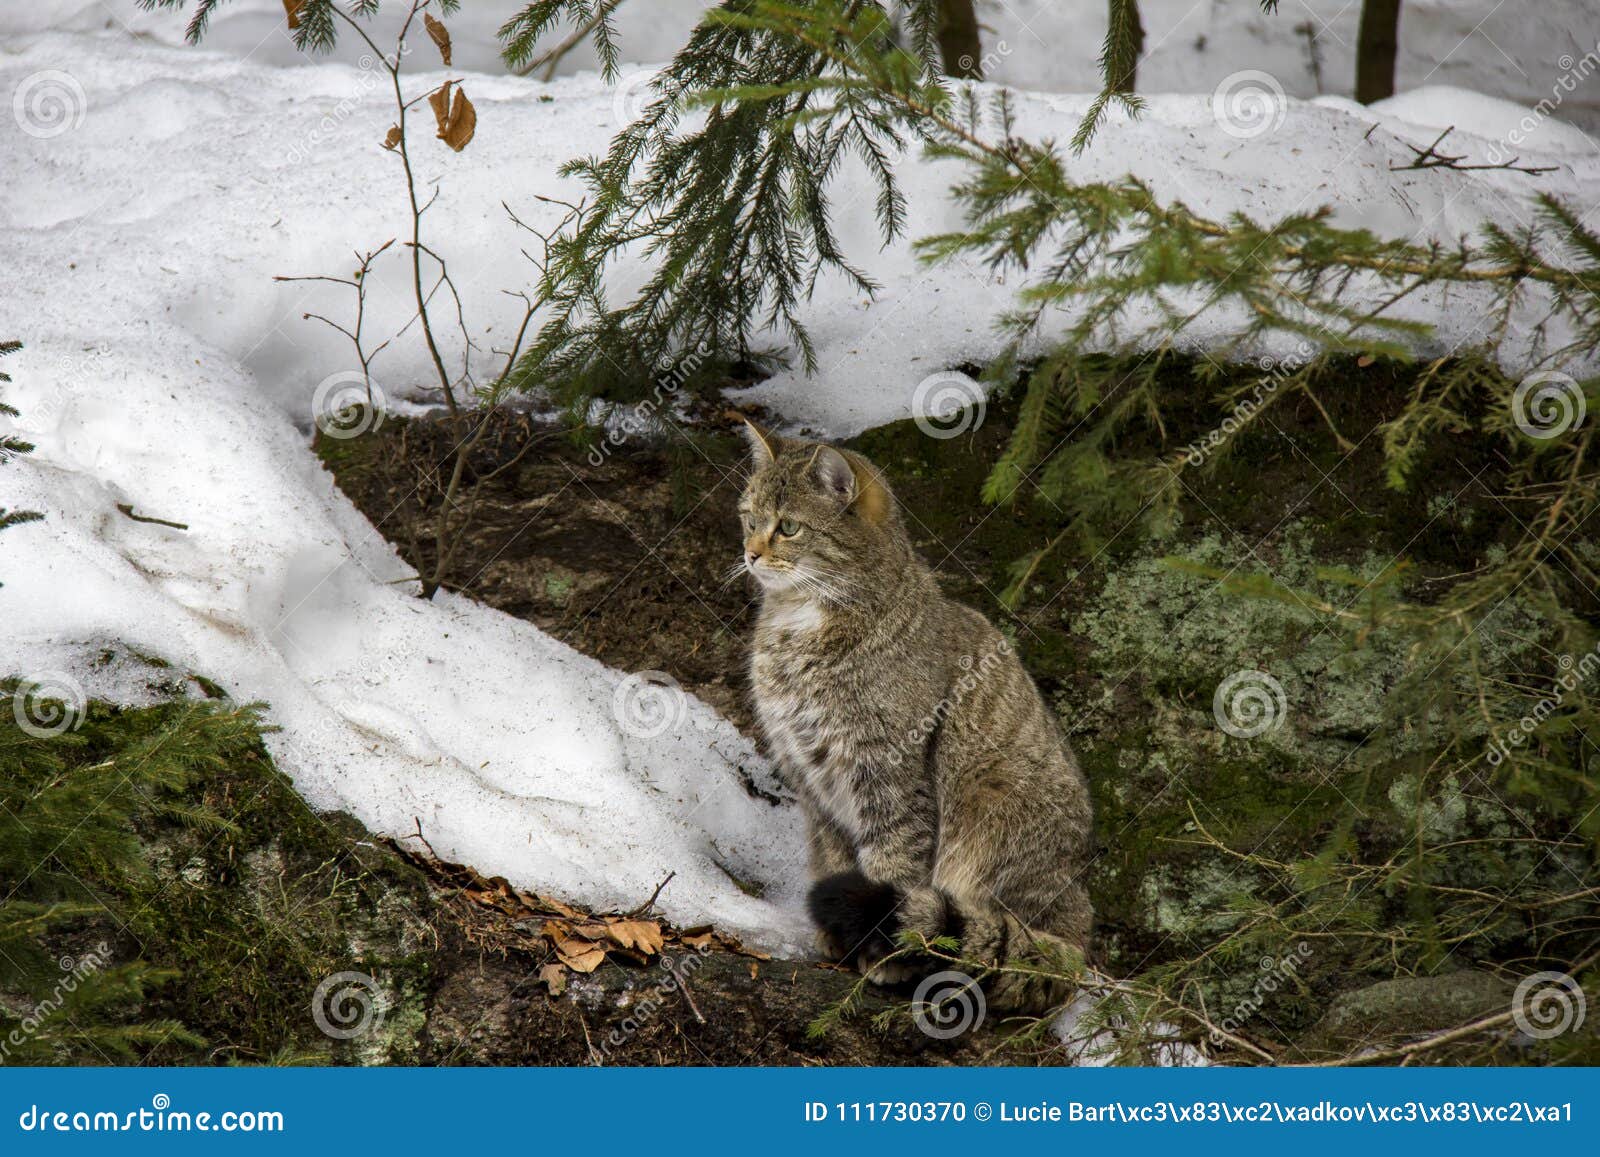 Wildcat in winter. stock photo. Image of whiskers, wildcat - 111730370